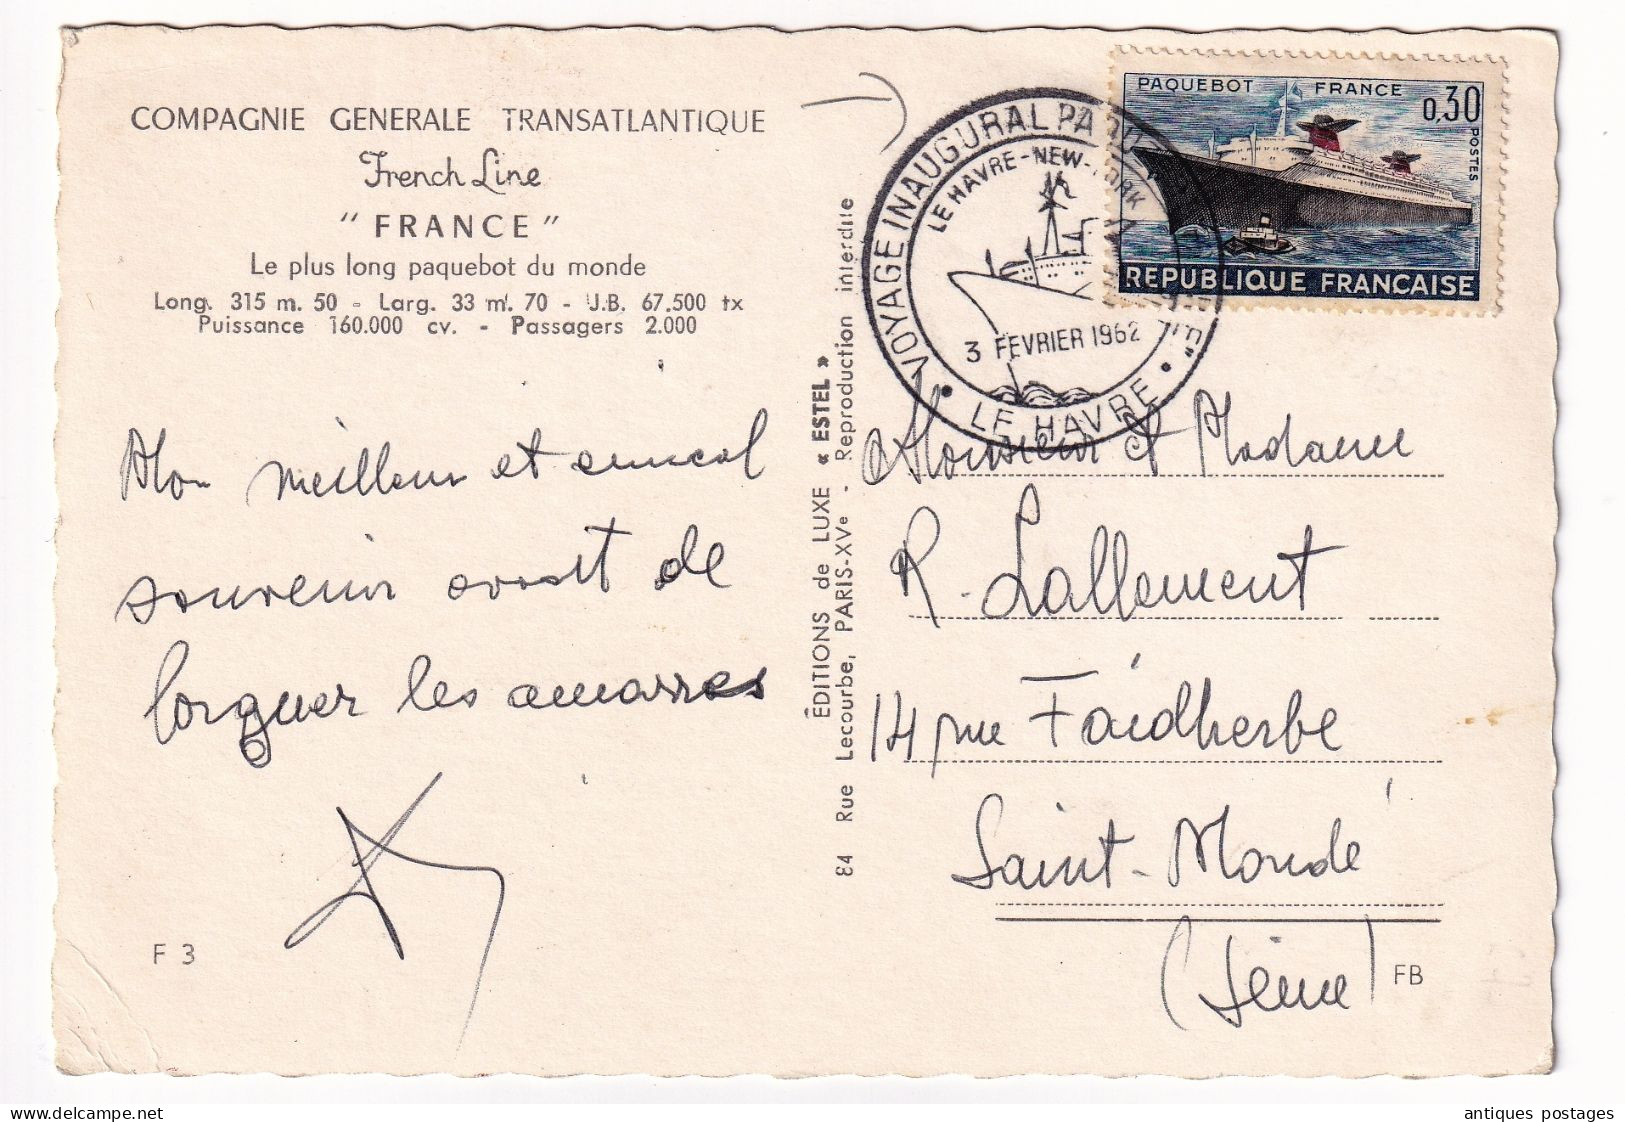 Paquebot France 3 Février 1962 Paris Voyage Inaugural Compagnie Générale Transatlantique  Le Havre New York French Line - Briefe U. Dokumente